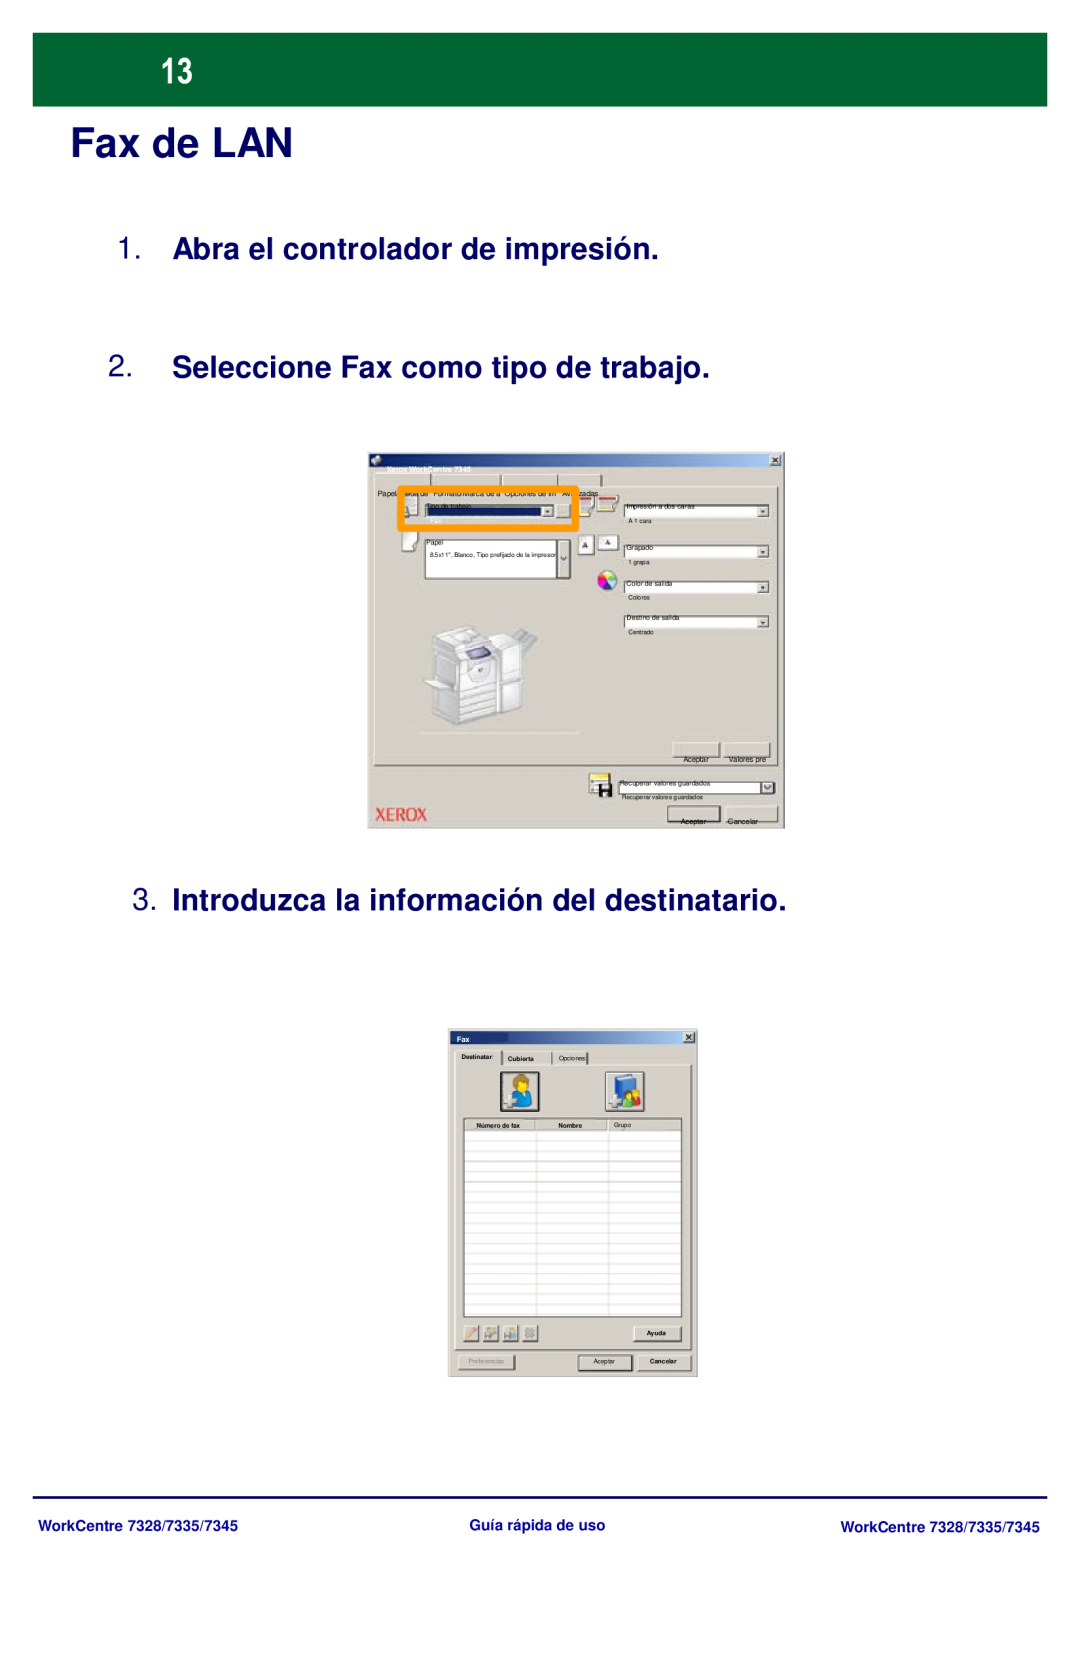 Xerox Fax de LAN, Abra el controlador de impresión, Seleccione Fax como tipo de trabajo, WorkCentre 7328/7335/7345 